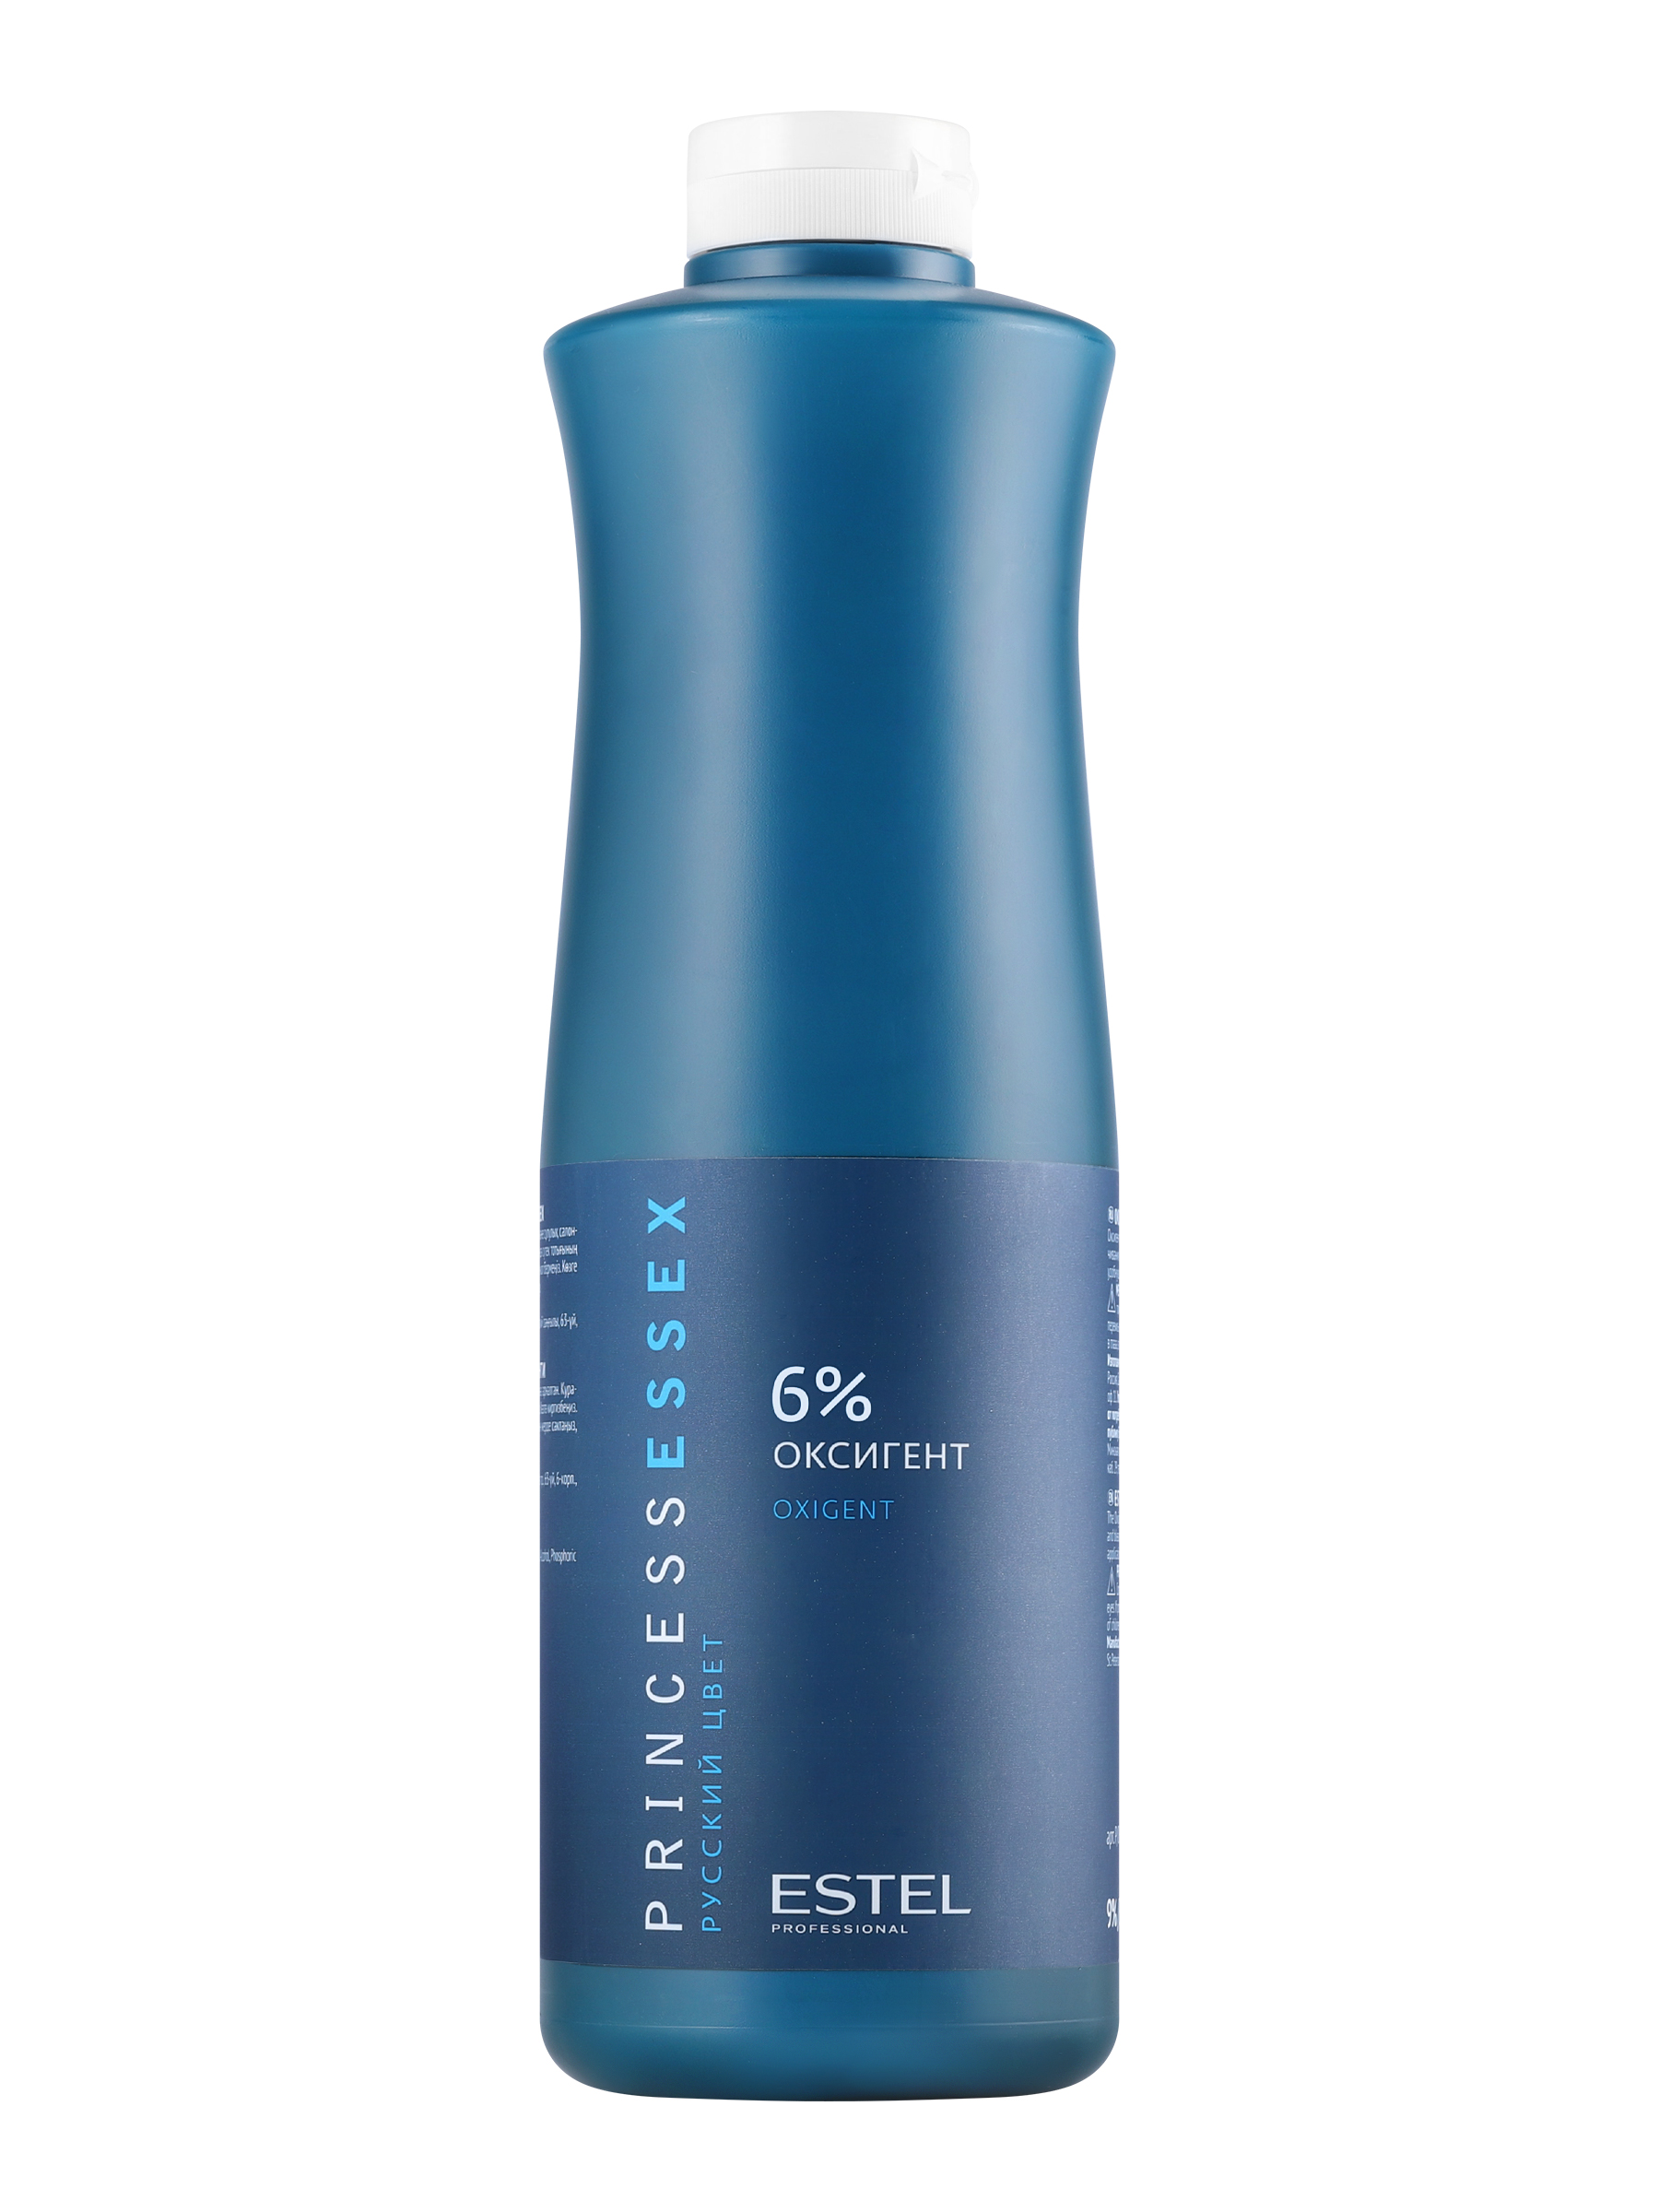 Проявитель Estel Essex Oxigent 6% 1 л проявитель keen cream developer 6% 1 л